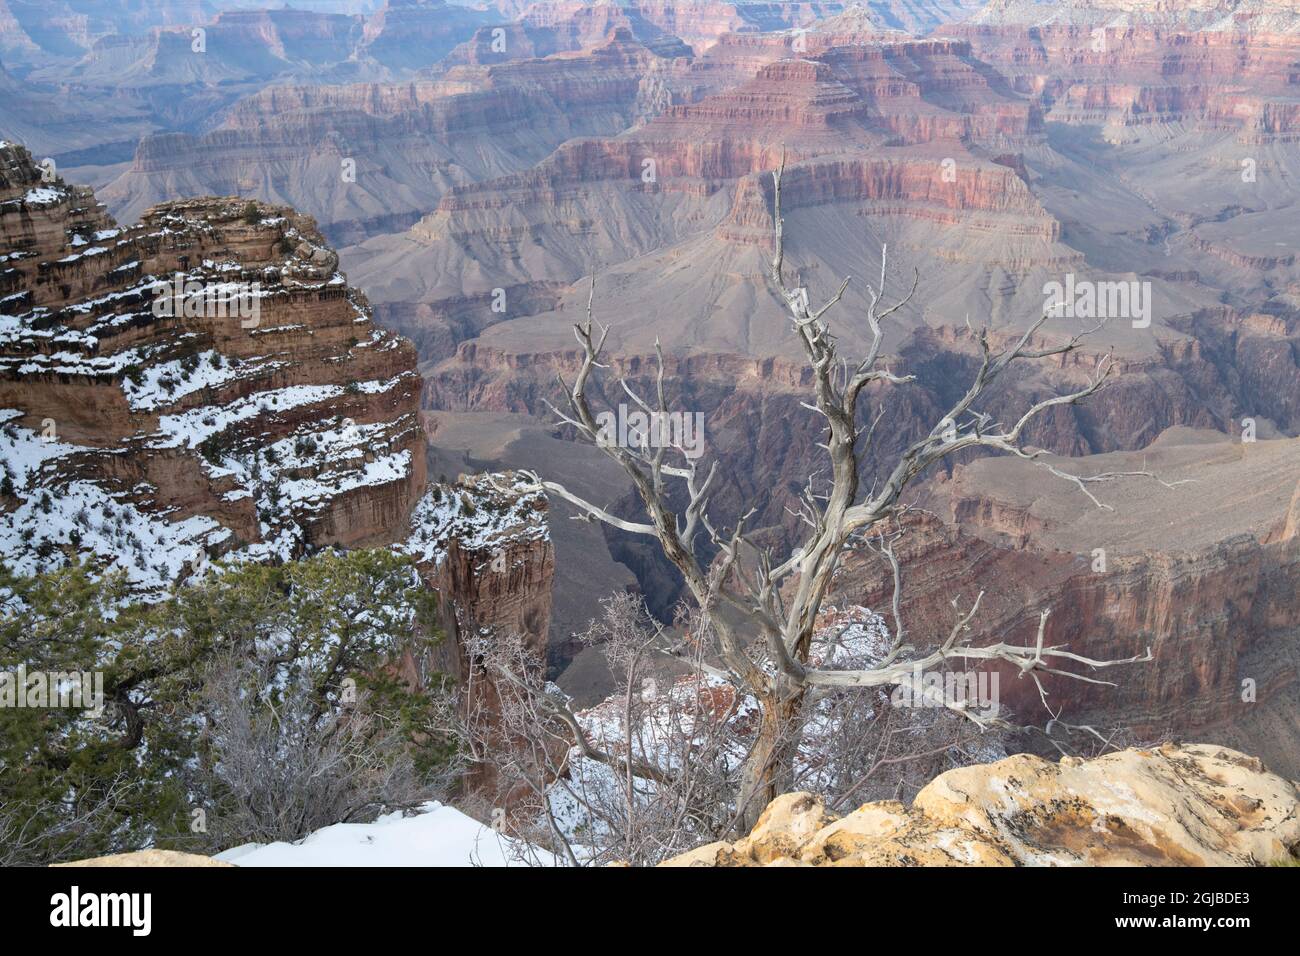 Powell Point, Grand Canyon National Park, Arizona, USA Stock Photo